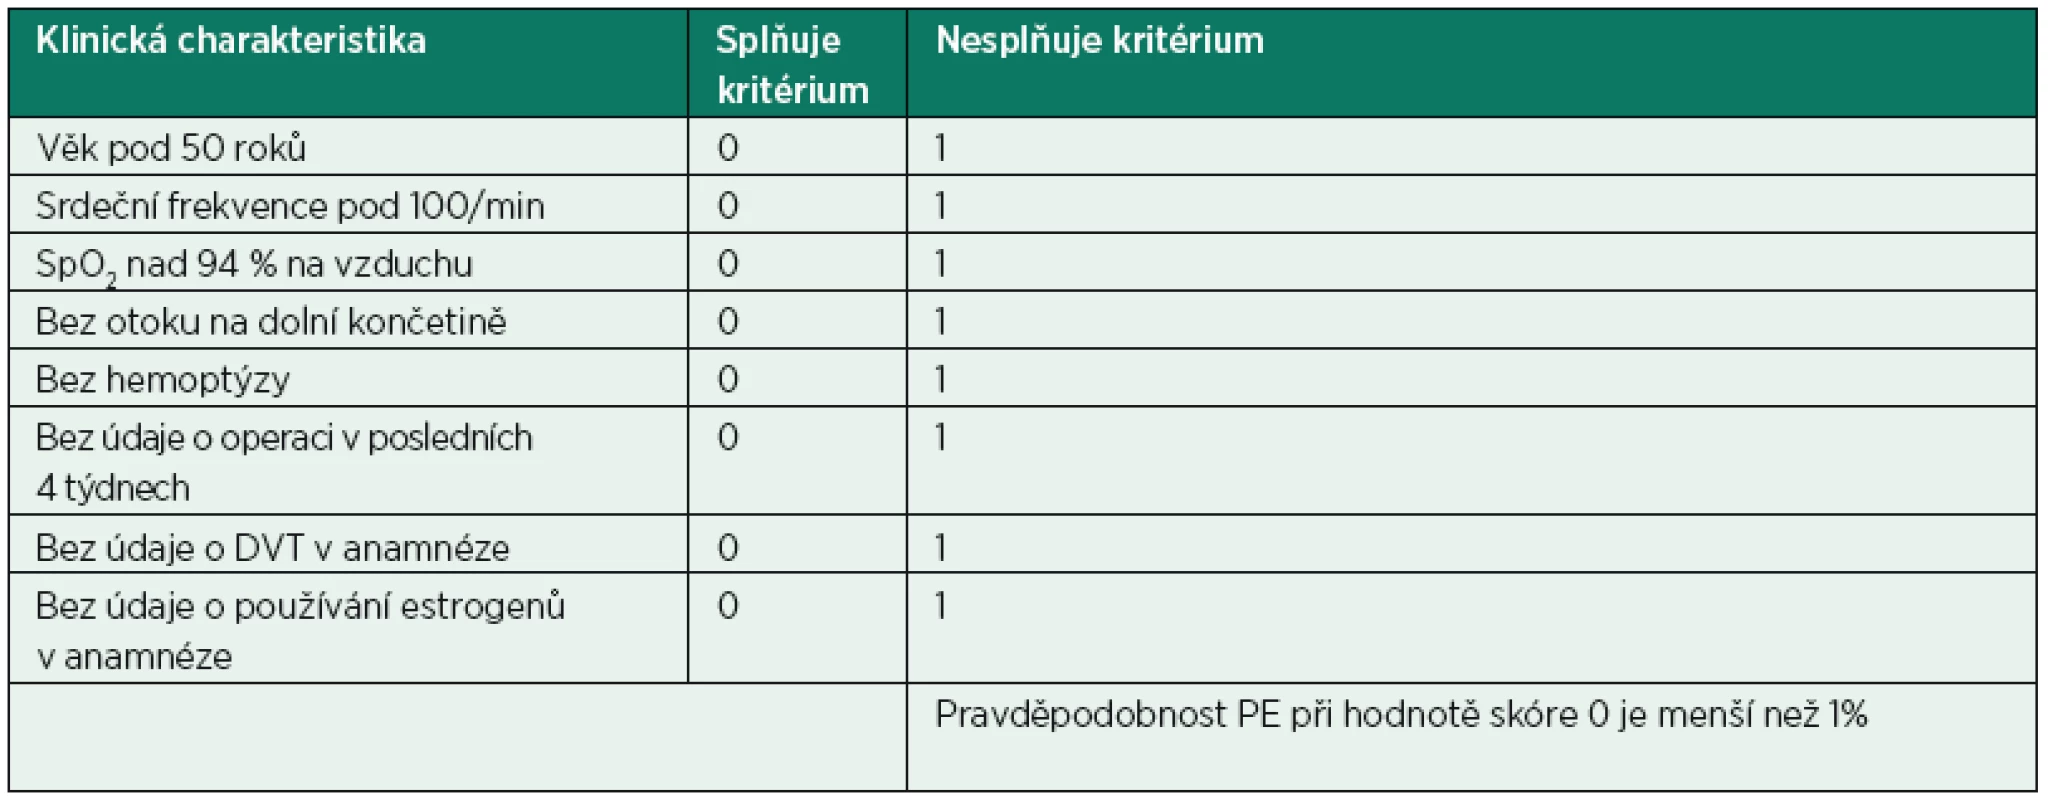 Pulmonary embolism rule-out criteria (PERC-score)*